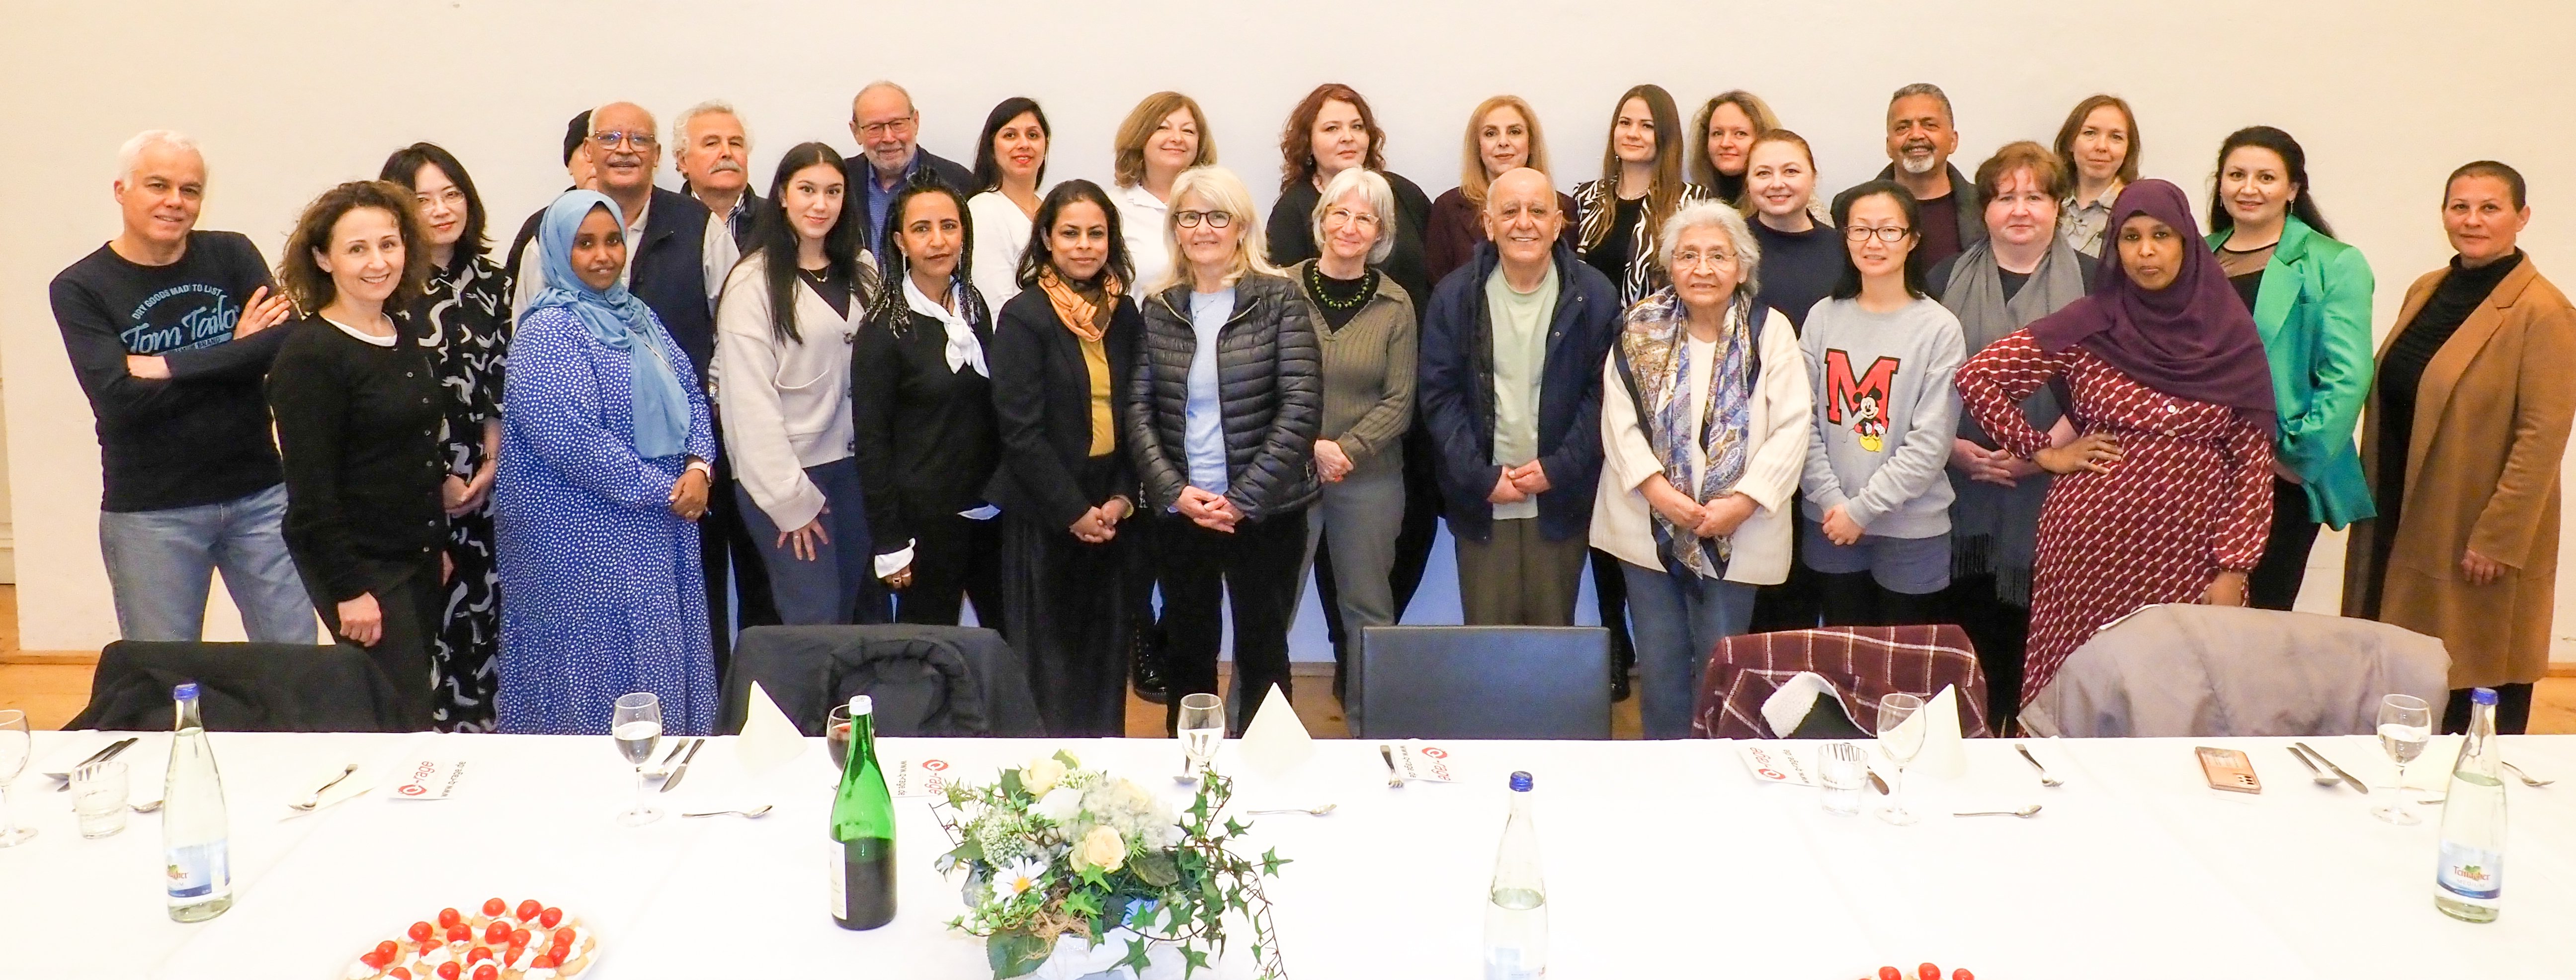 Gruppenfoto des ehrenamtlichen Dolmetscherdienstes von Ludwigsburg beim Besuch im EU-Parlamanet